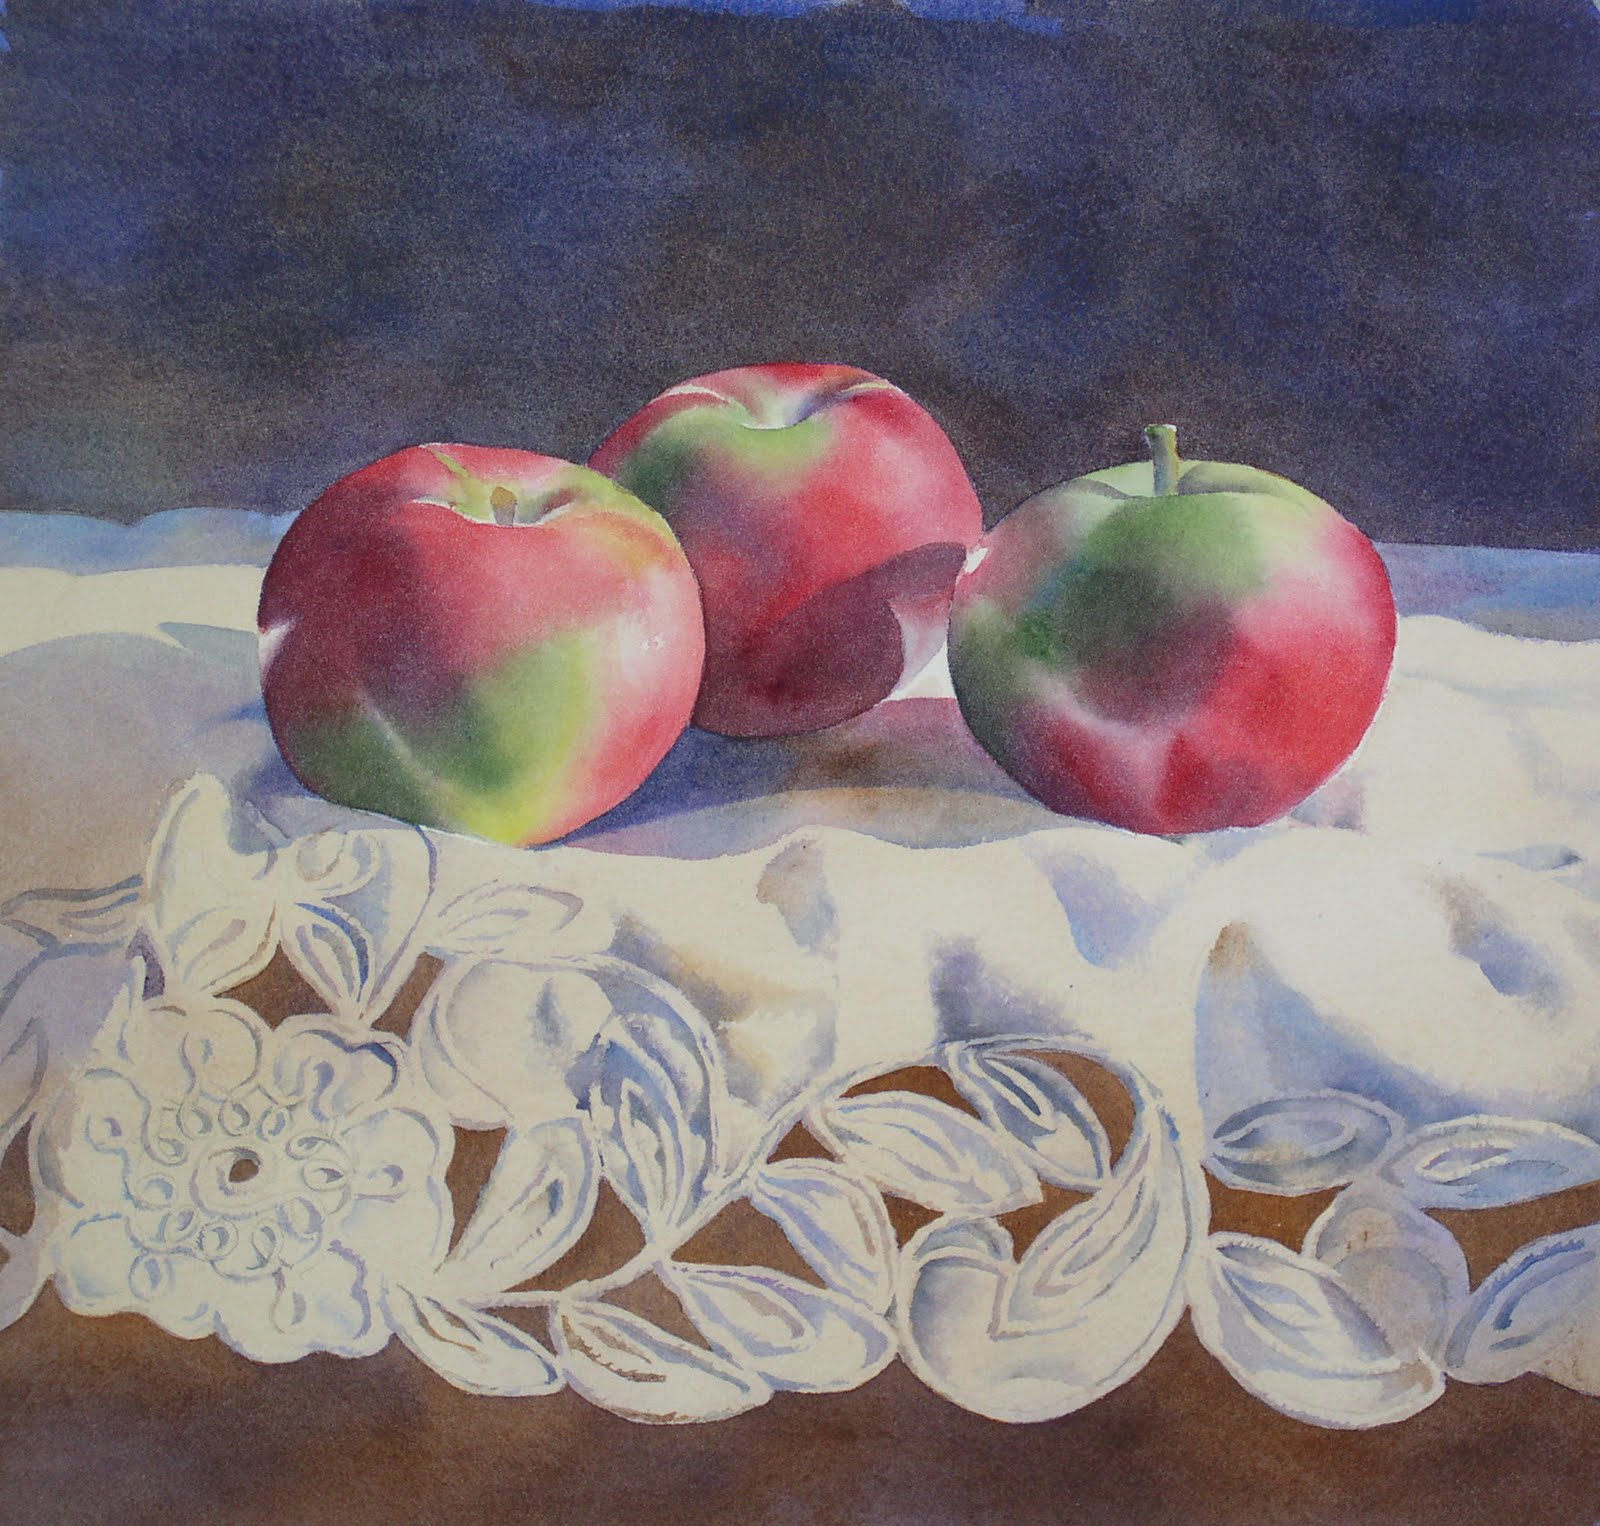 水彩静物写生进阶教程——桌台上三个红绿苹果